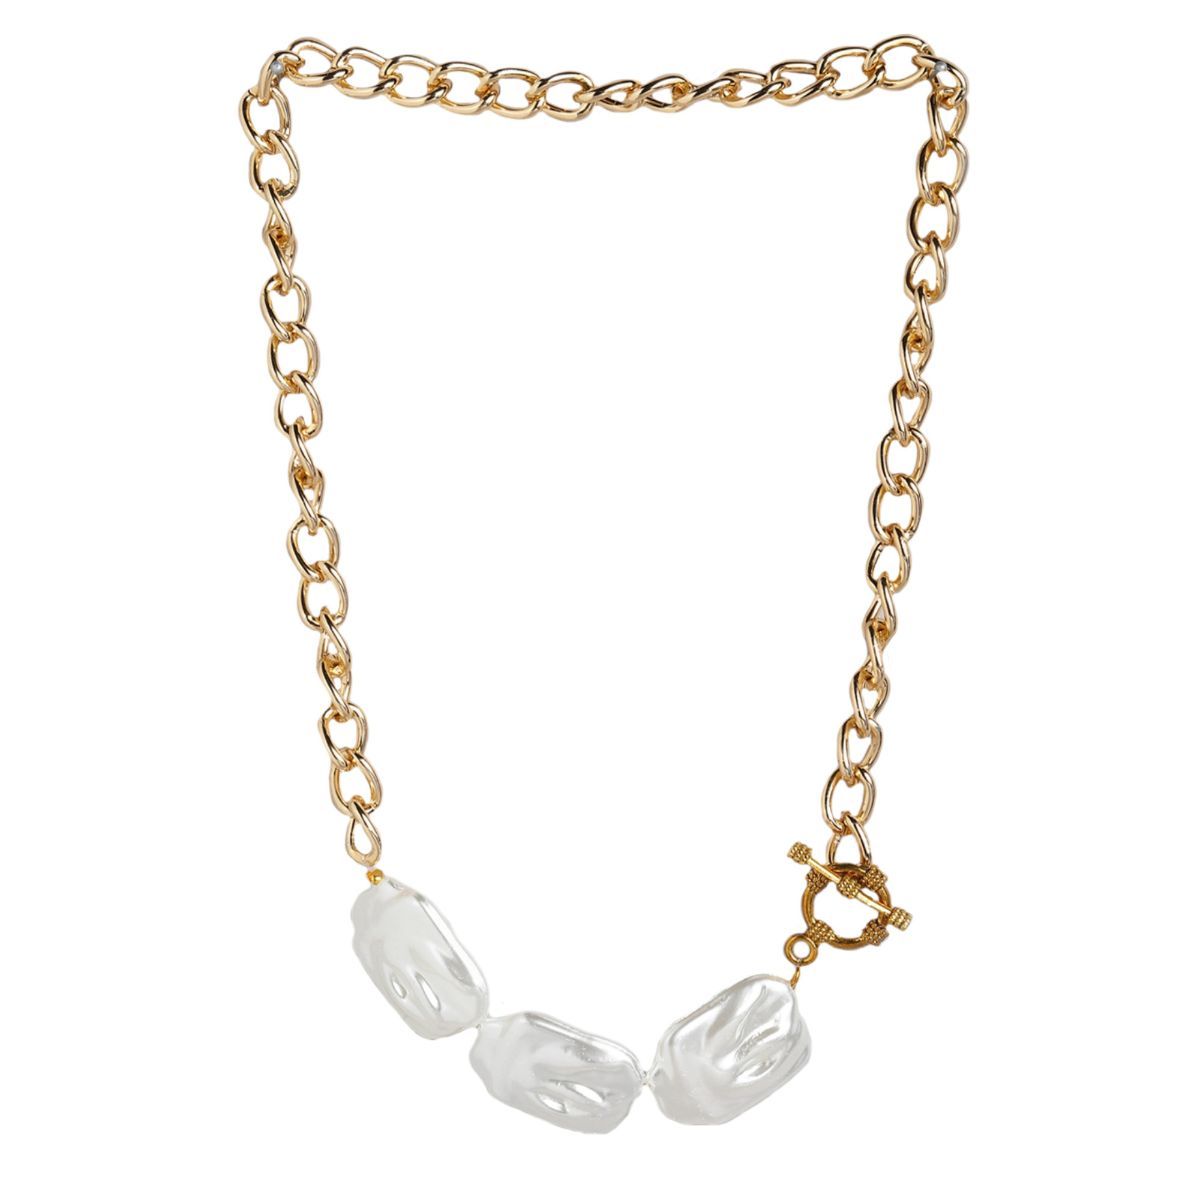 Square Toggle Clasp Chain Necklace – Ciunofor